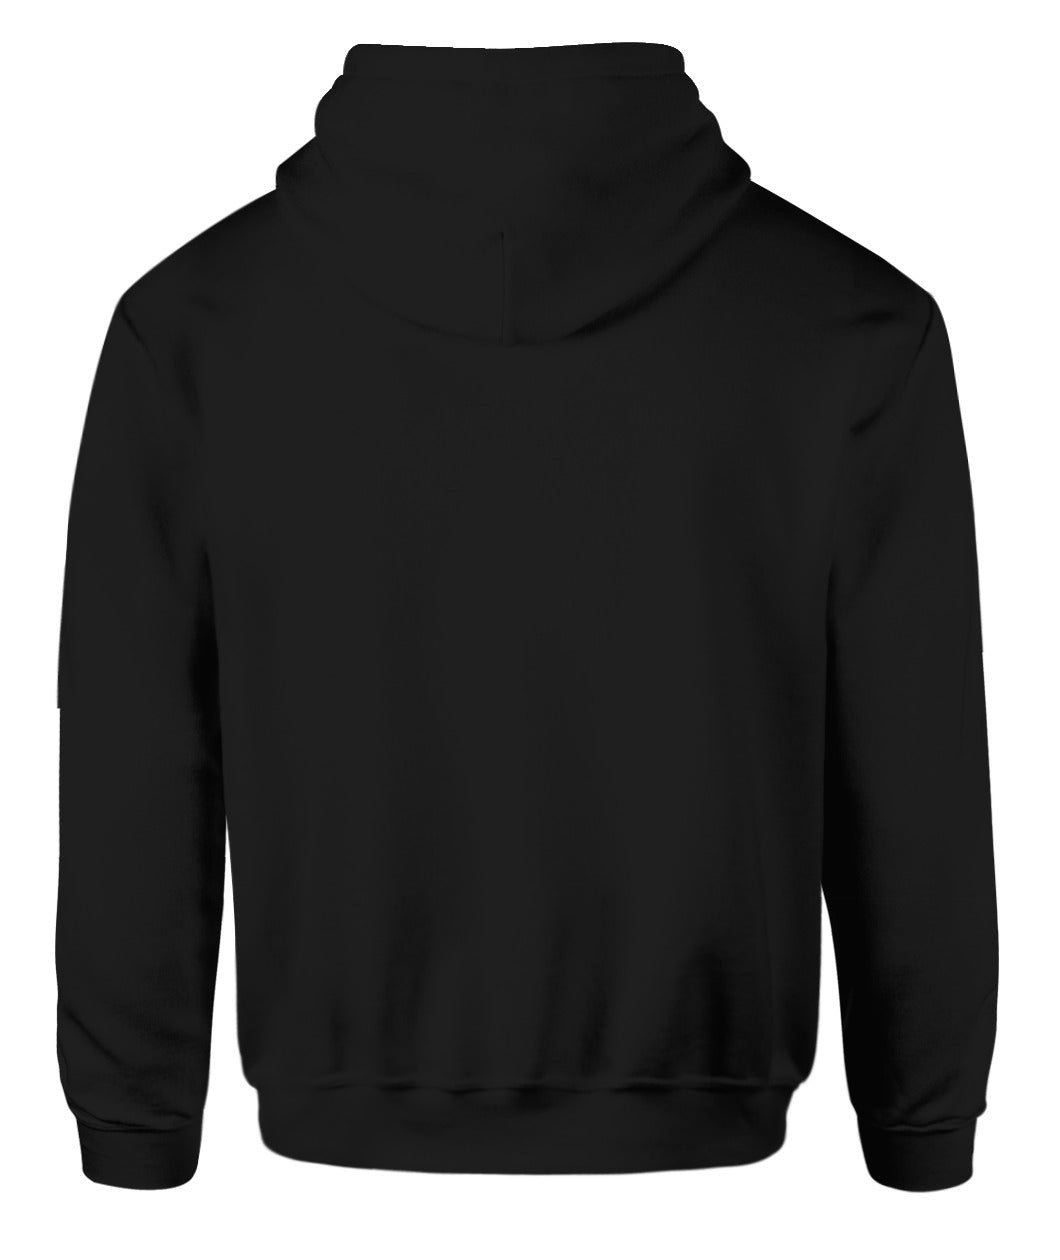 A.‘.A.’. Probationer Robe (Black Crowley Variation)-Inspired Hoodie Sweatshirt